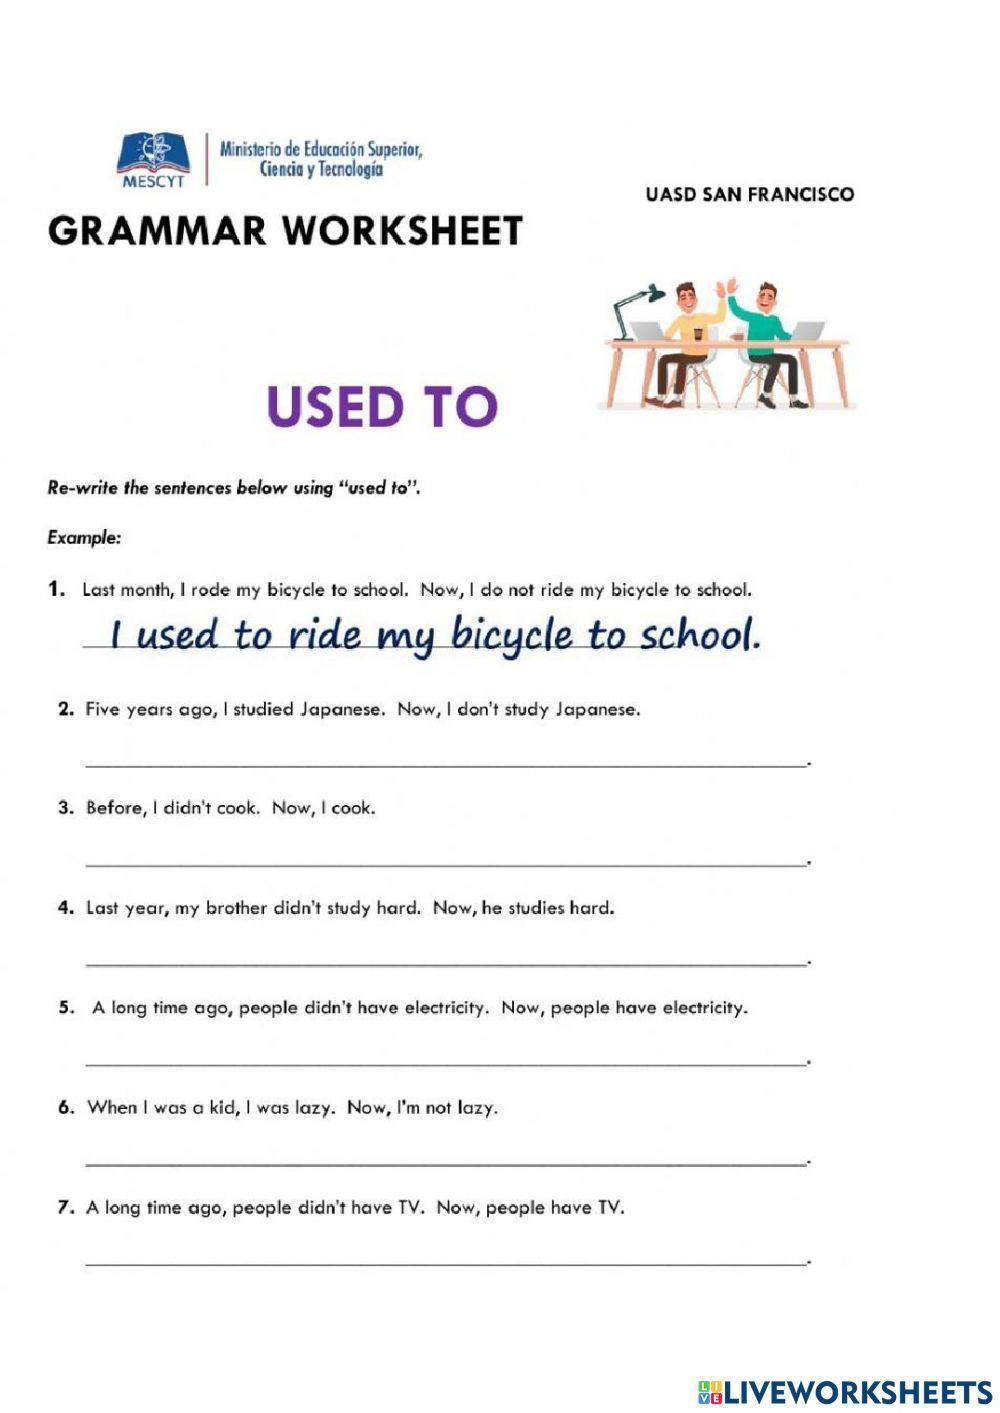 Grammar worksheet used to